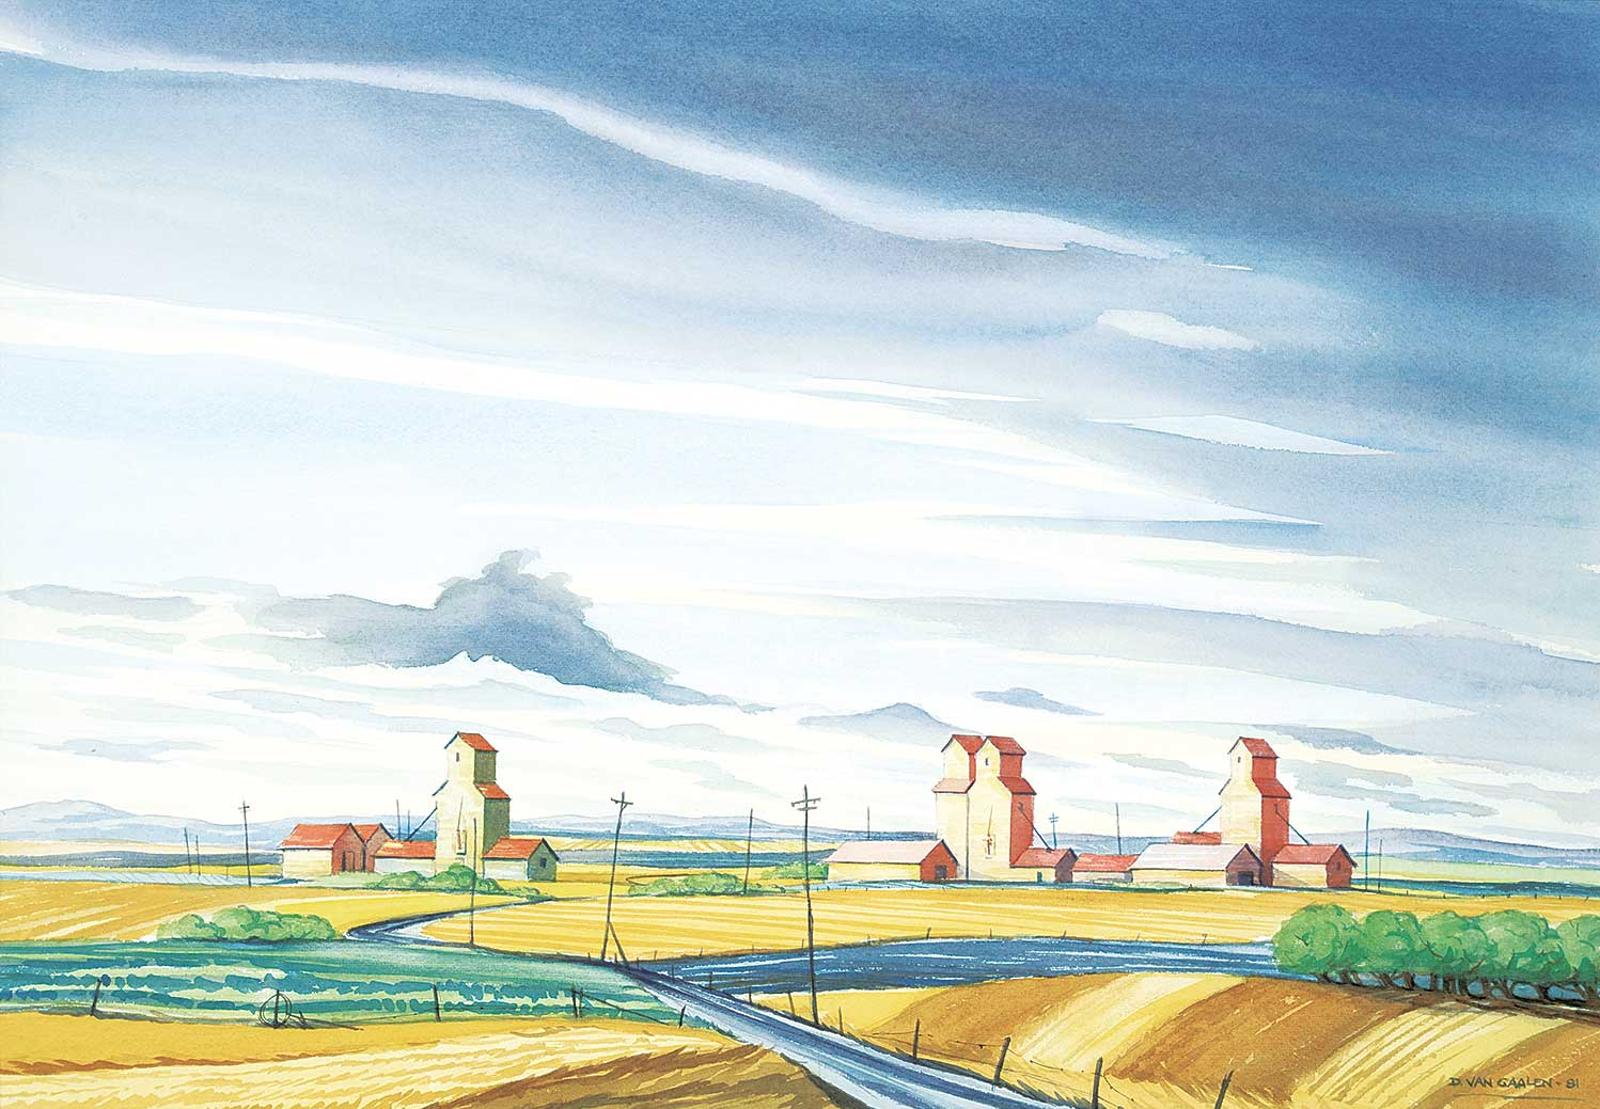 Douglas John Van Gaalen (1947) - Grain Elevators, West of Calgary